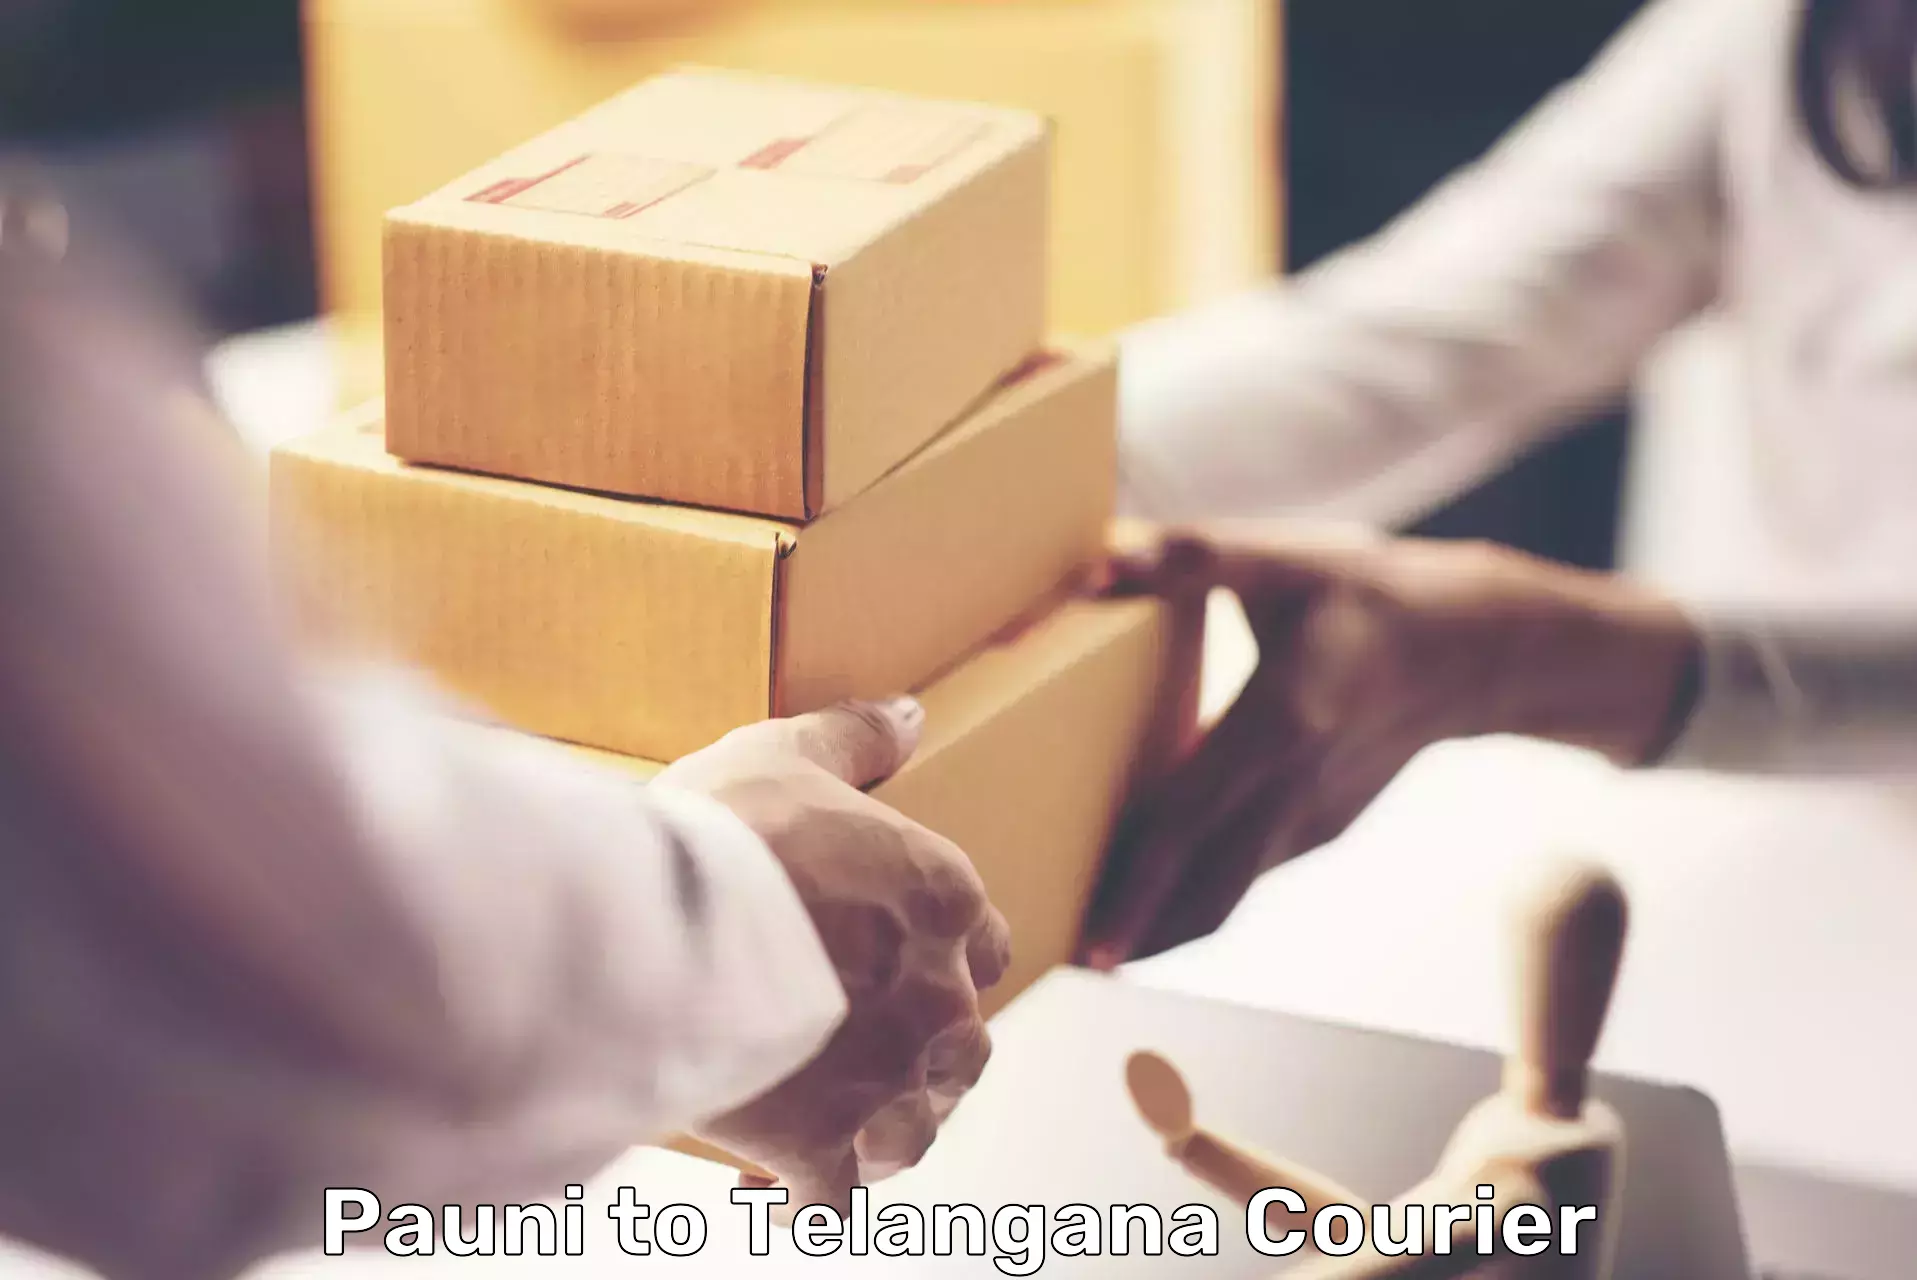 High-capacity parcel service Pauni to Wanaparthy